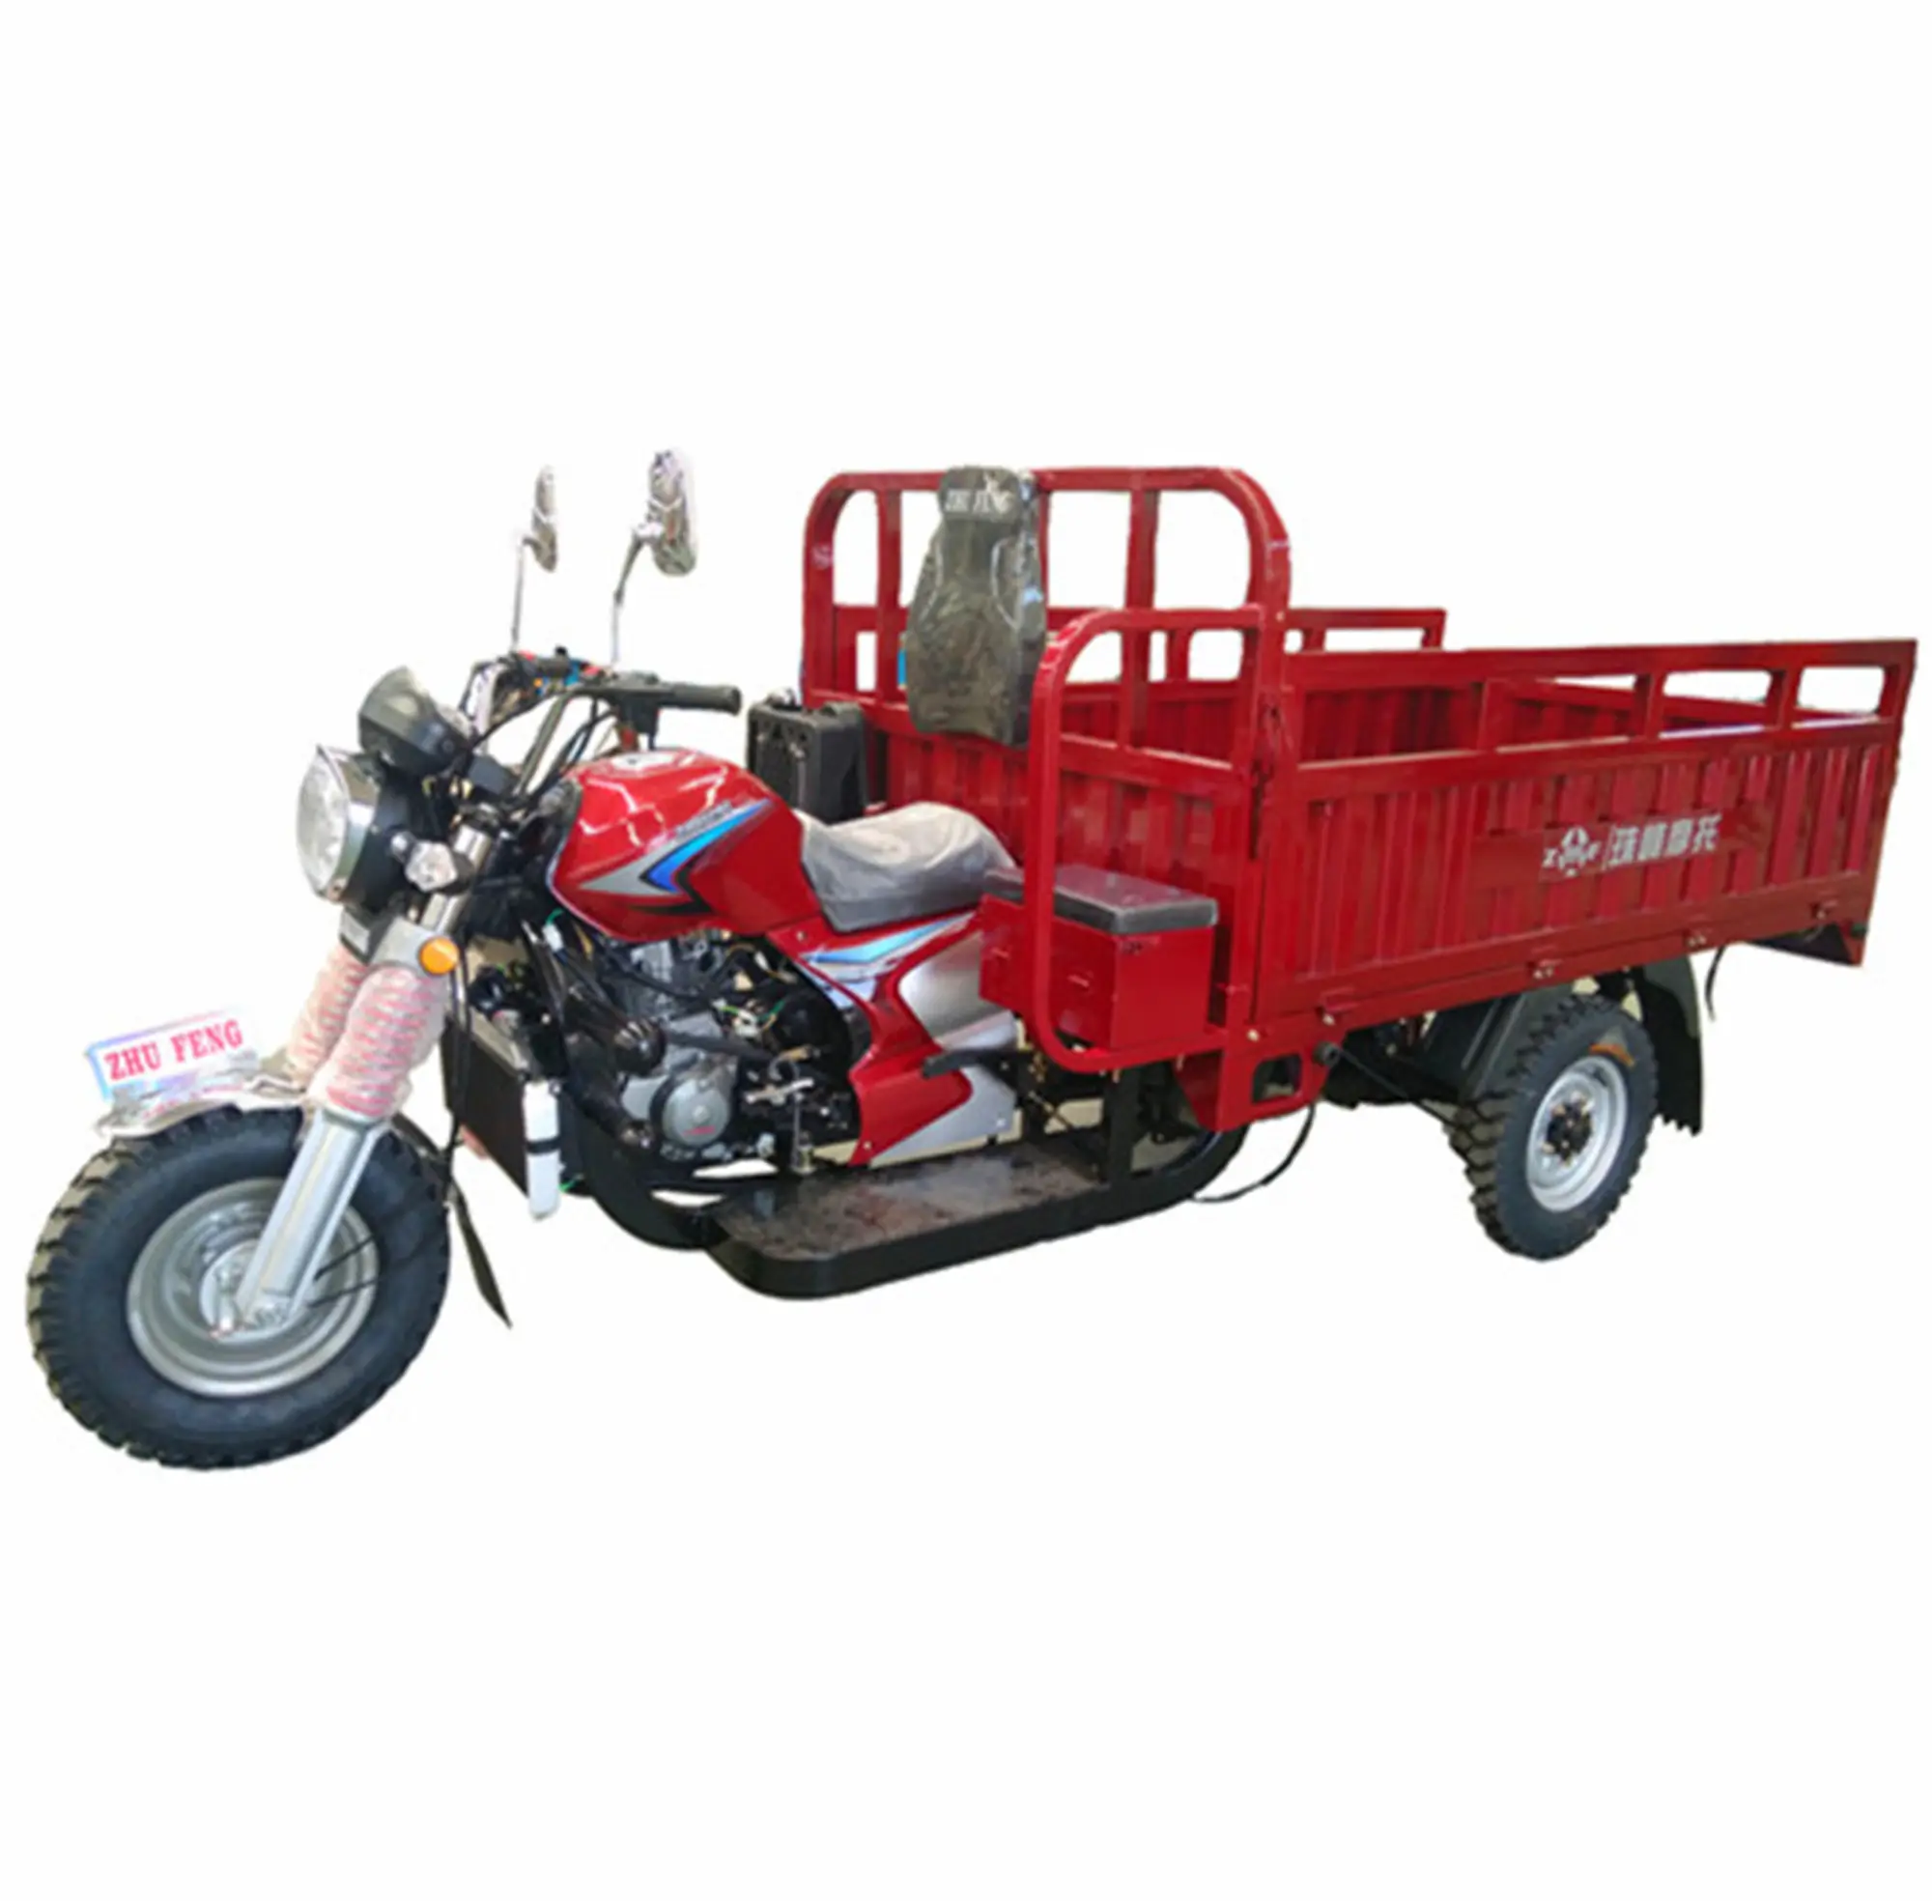 Оптовая продажа с завода, новый супермощный 200cc мотоцикл с бензиновым двигателем, грузовой трехколесный велосипед